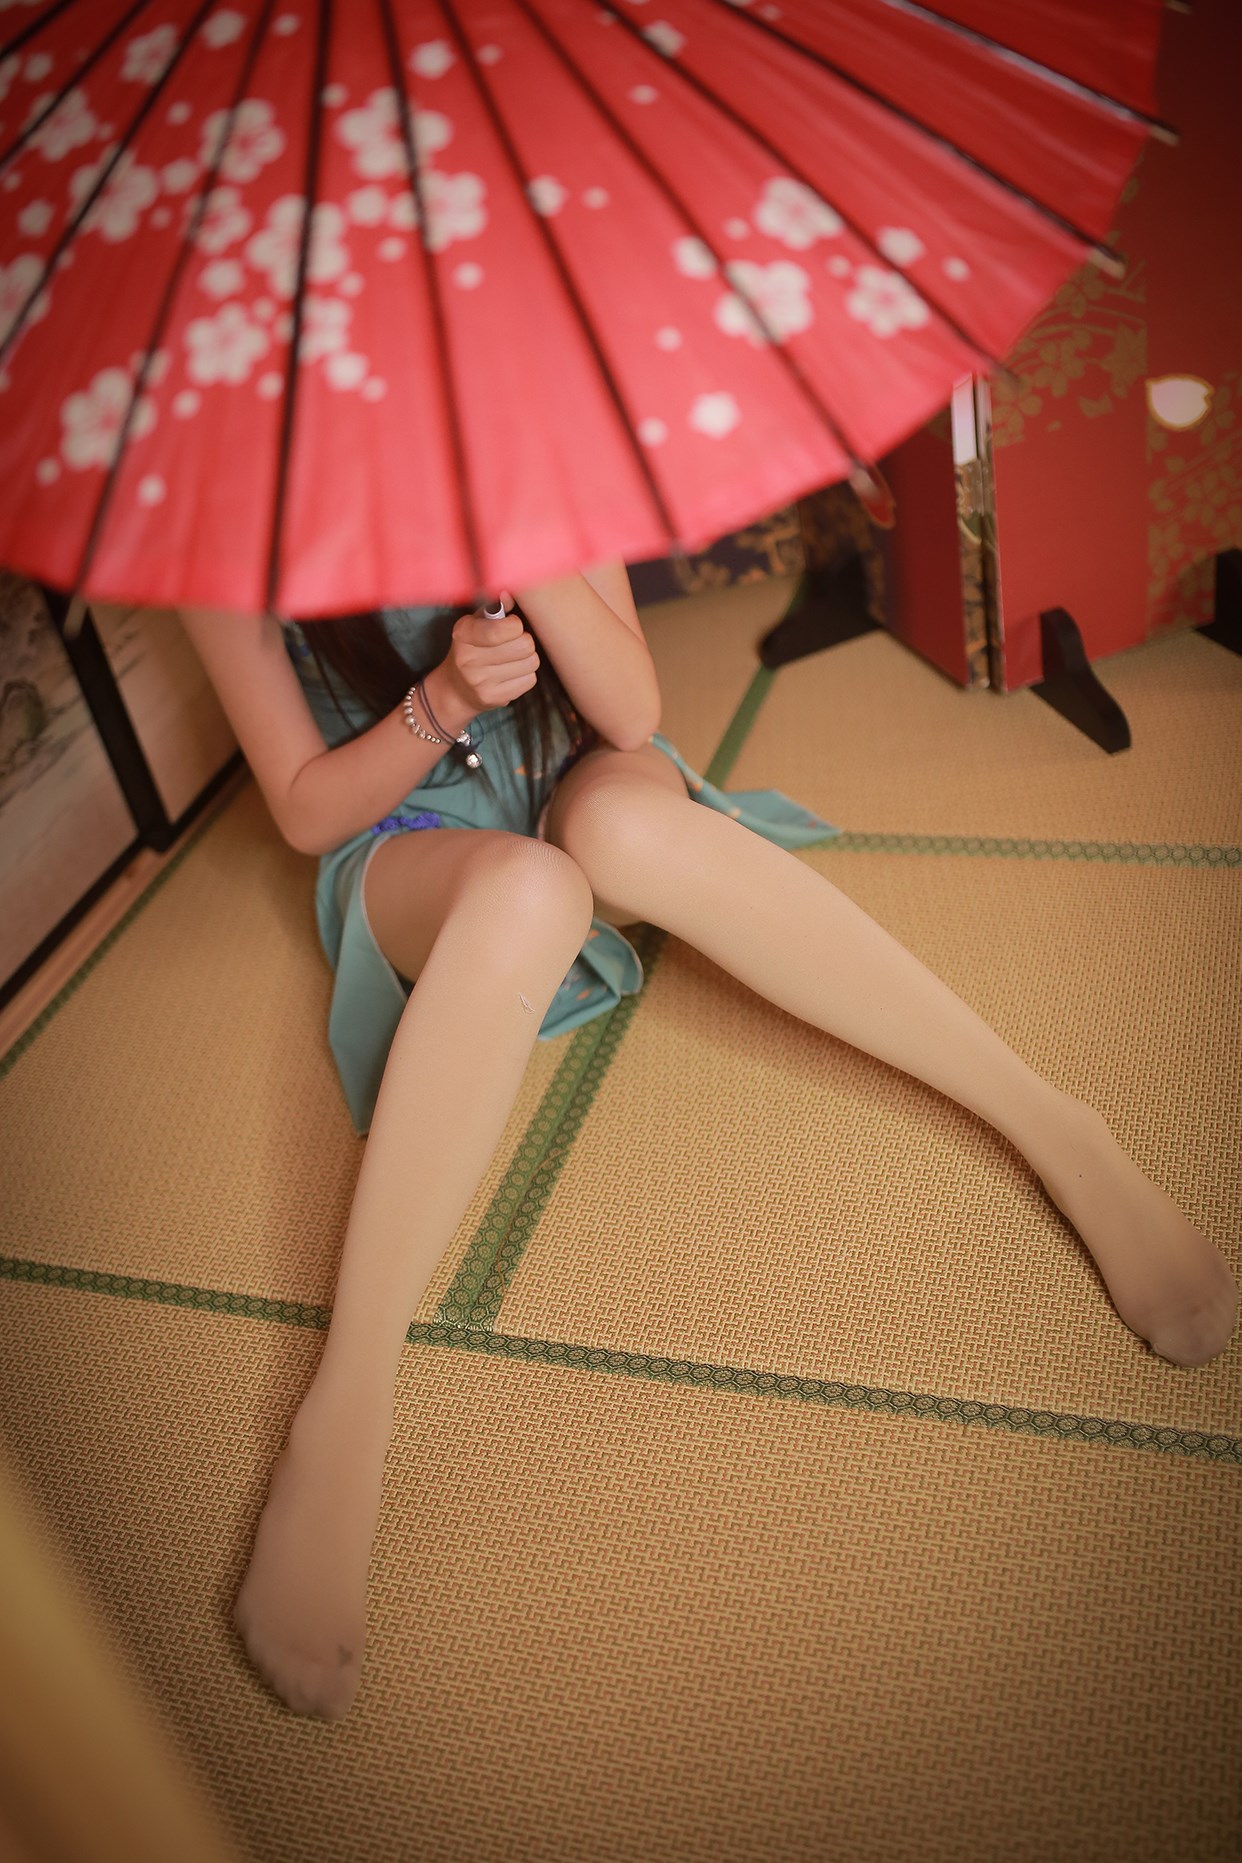 A rabbit playing with a cheongsam girl under an umbrella(20)